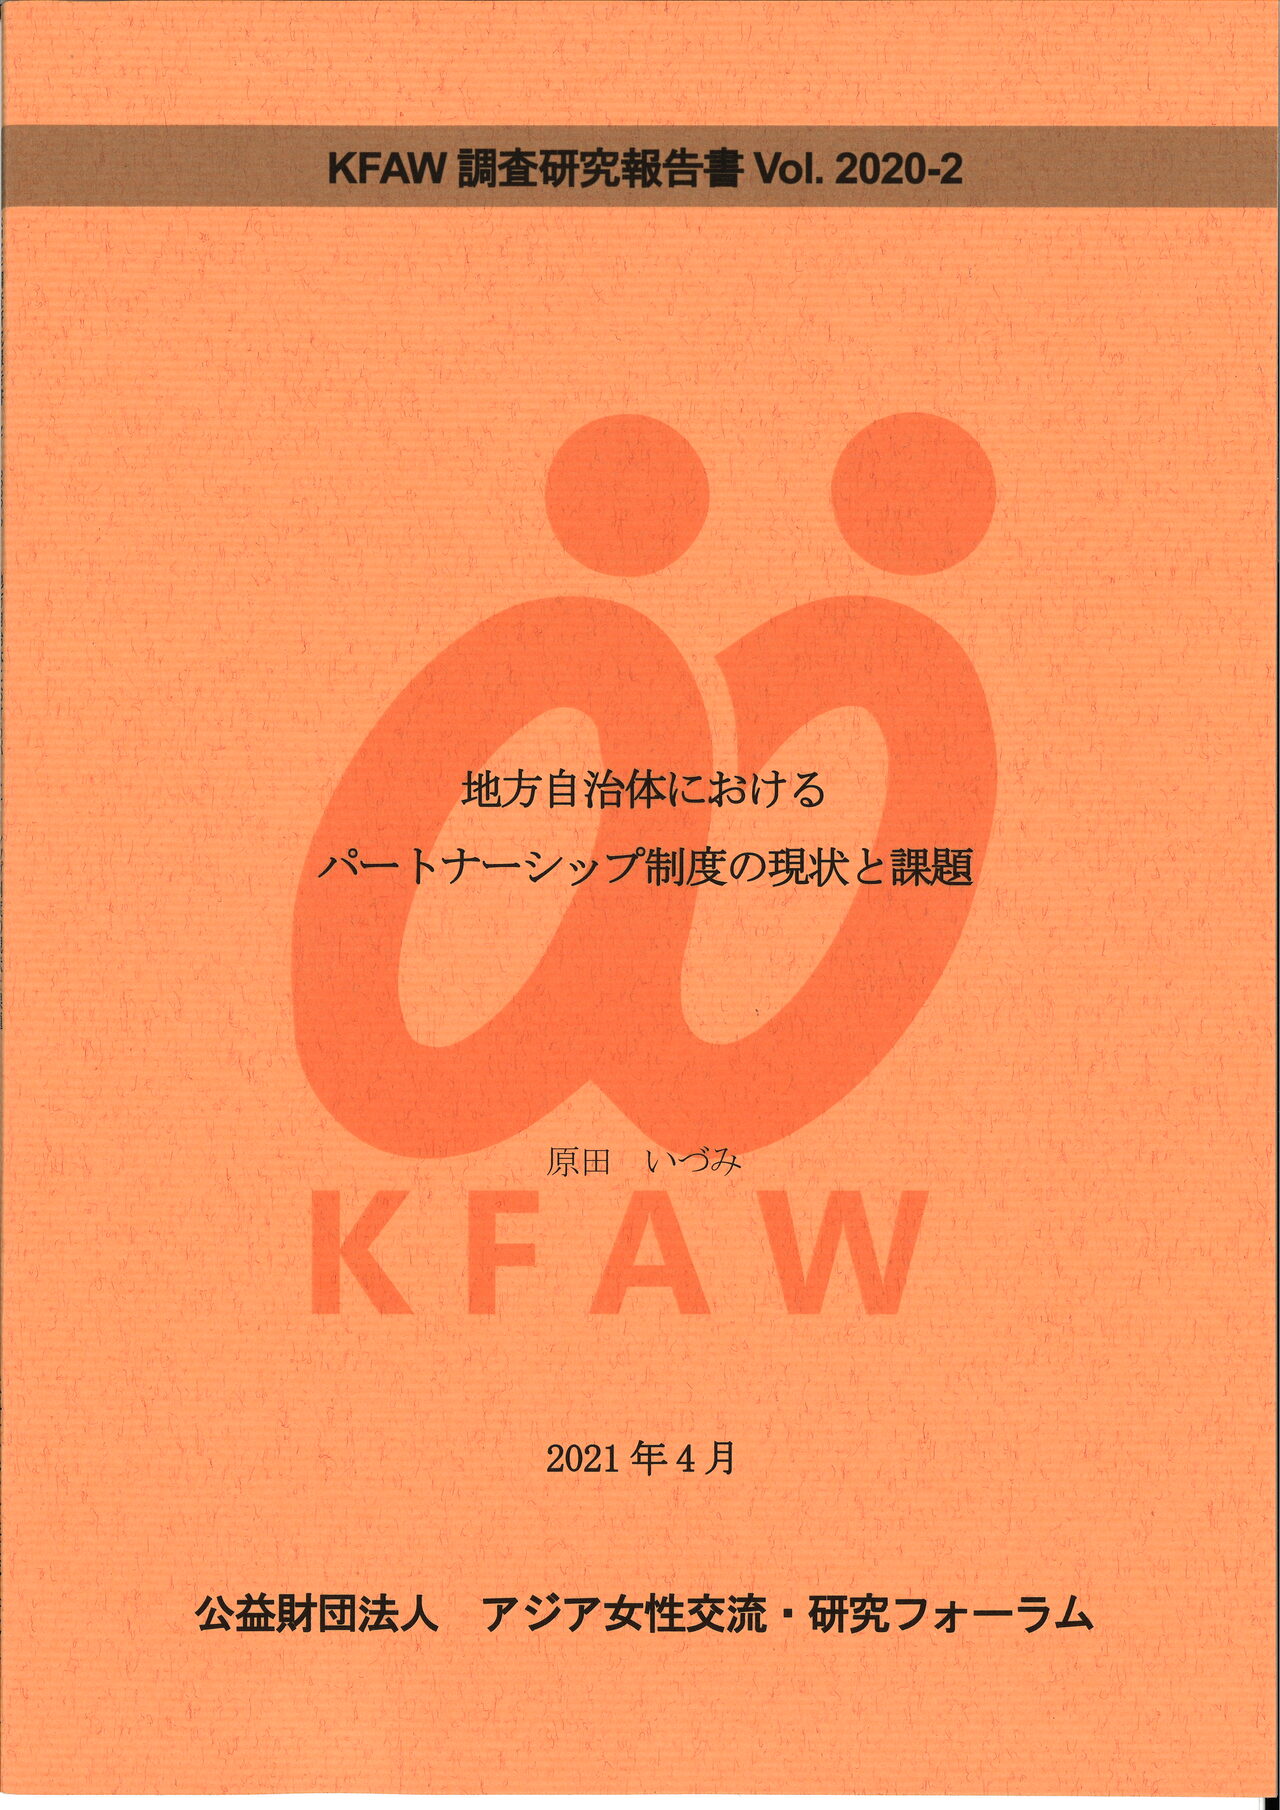 (日本語) Vol.2020-2 「地方自治体におけるパートナーシップ制度の現状と課題」（2021年4月）